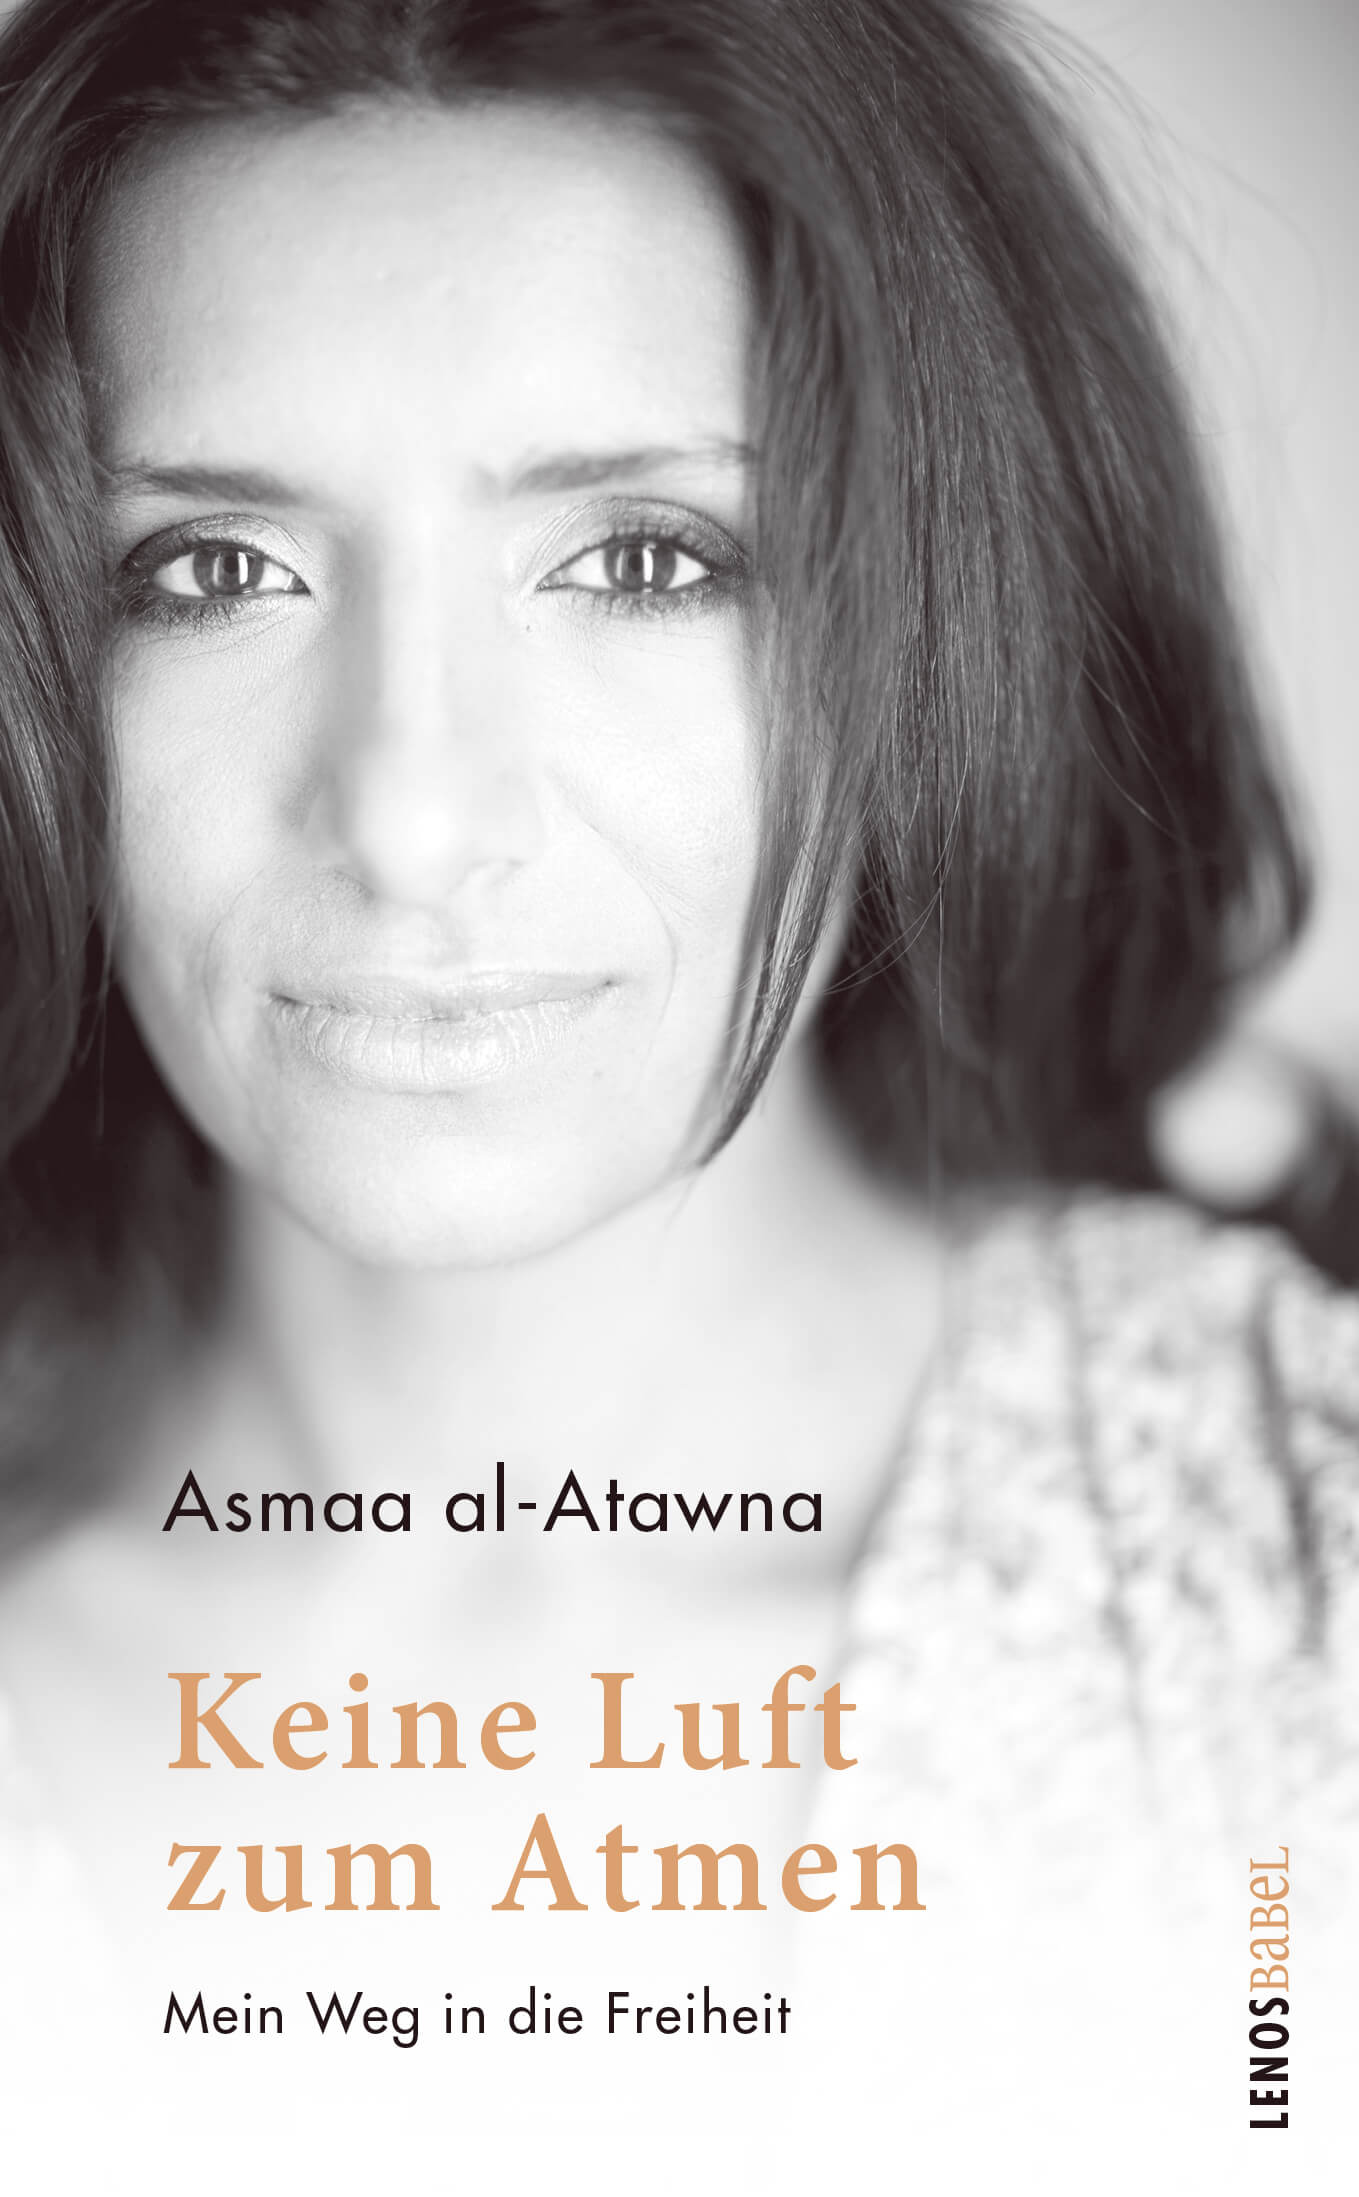 Buchcover von "Keine Ludt zum Atmen" von Asmaa al-Atwa